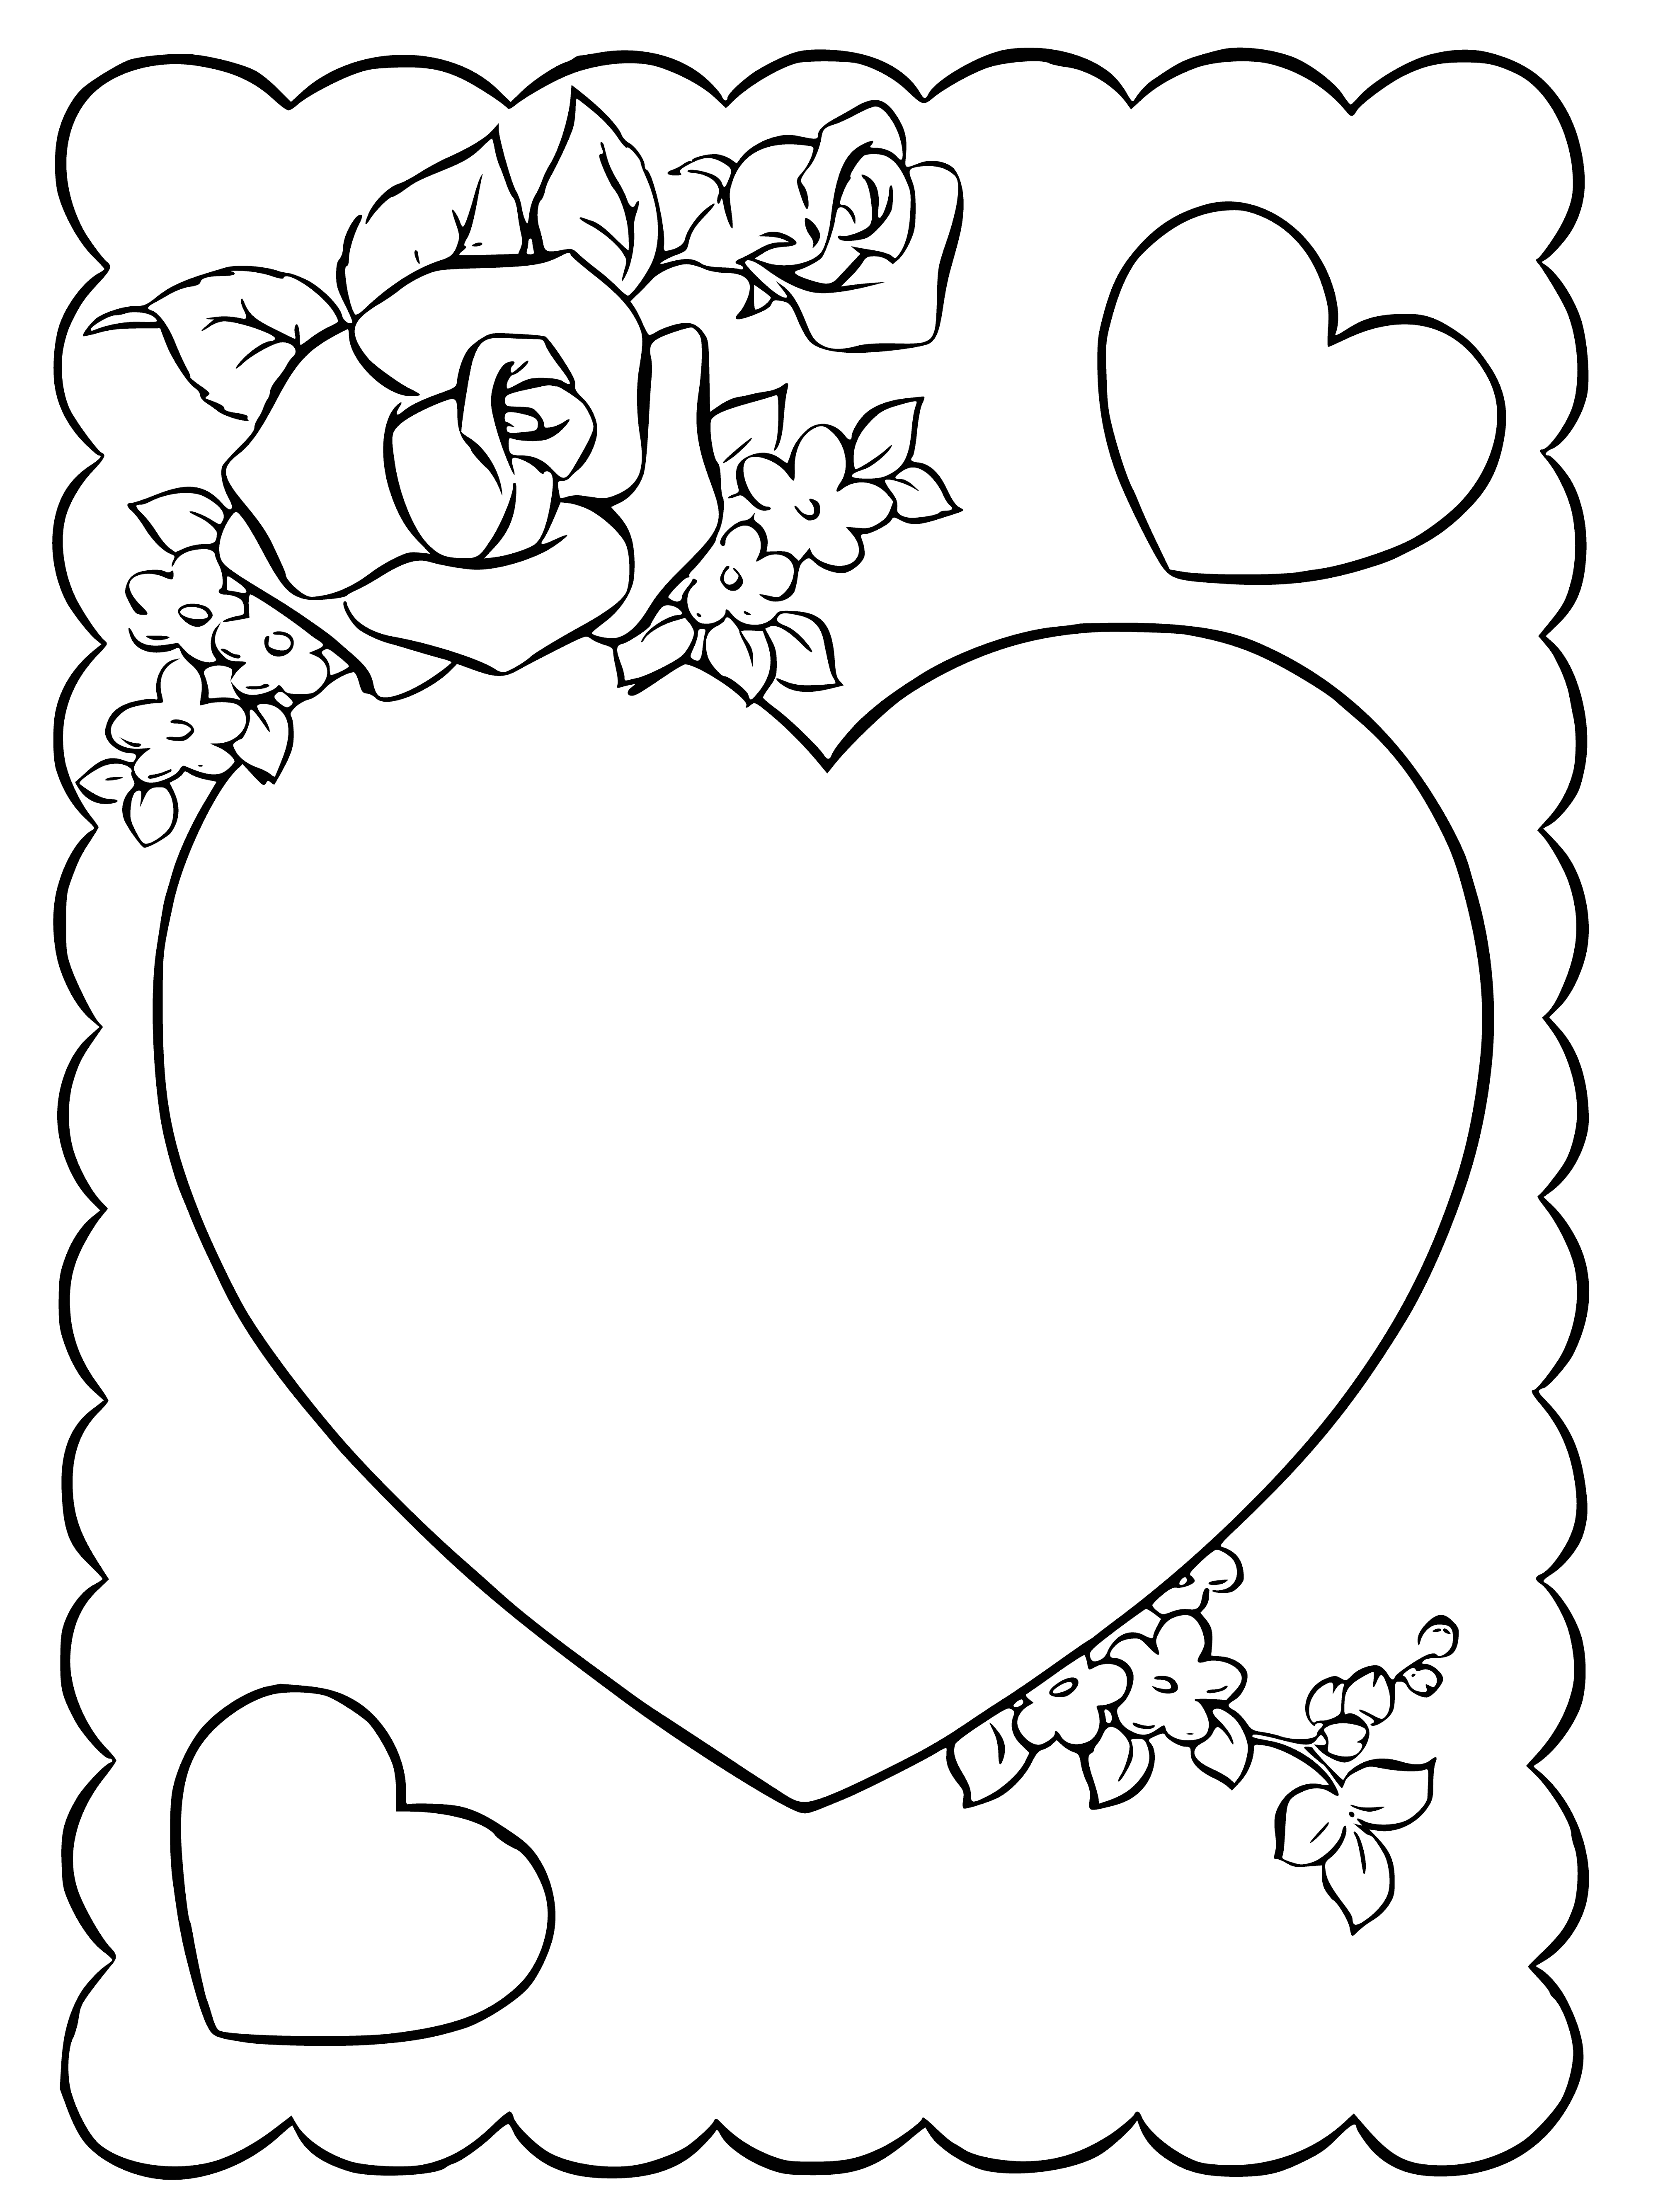 Kalp ve çiçeklerle tebrik kartı boyama sayfası